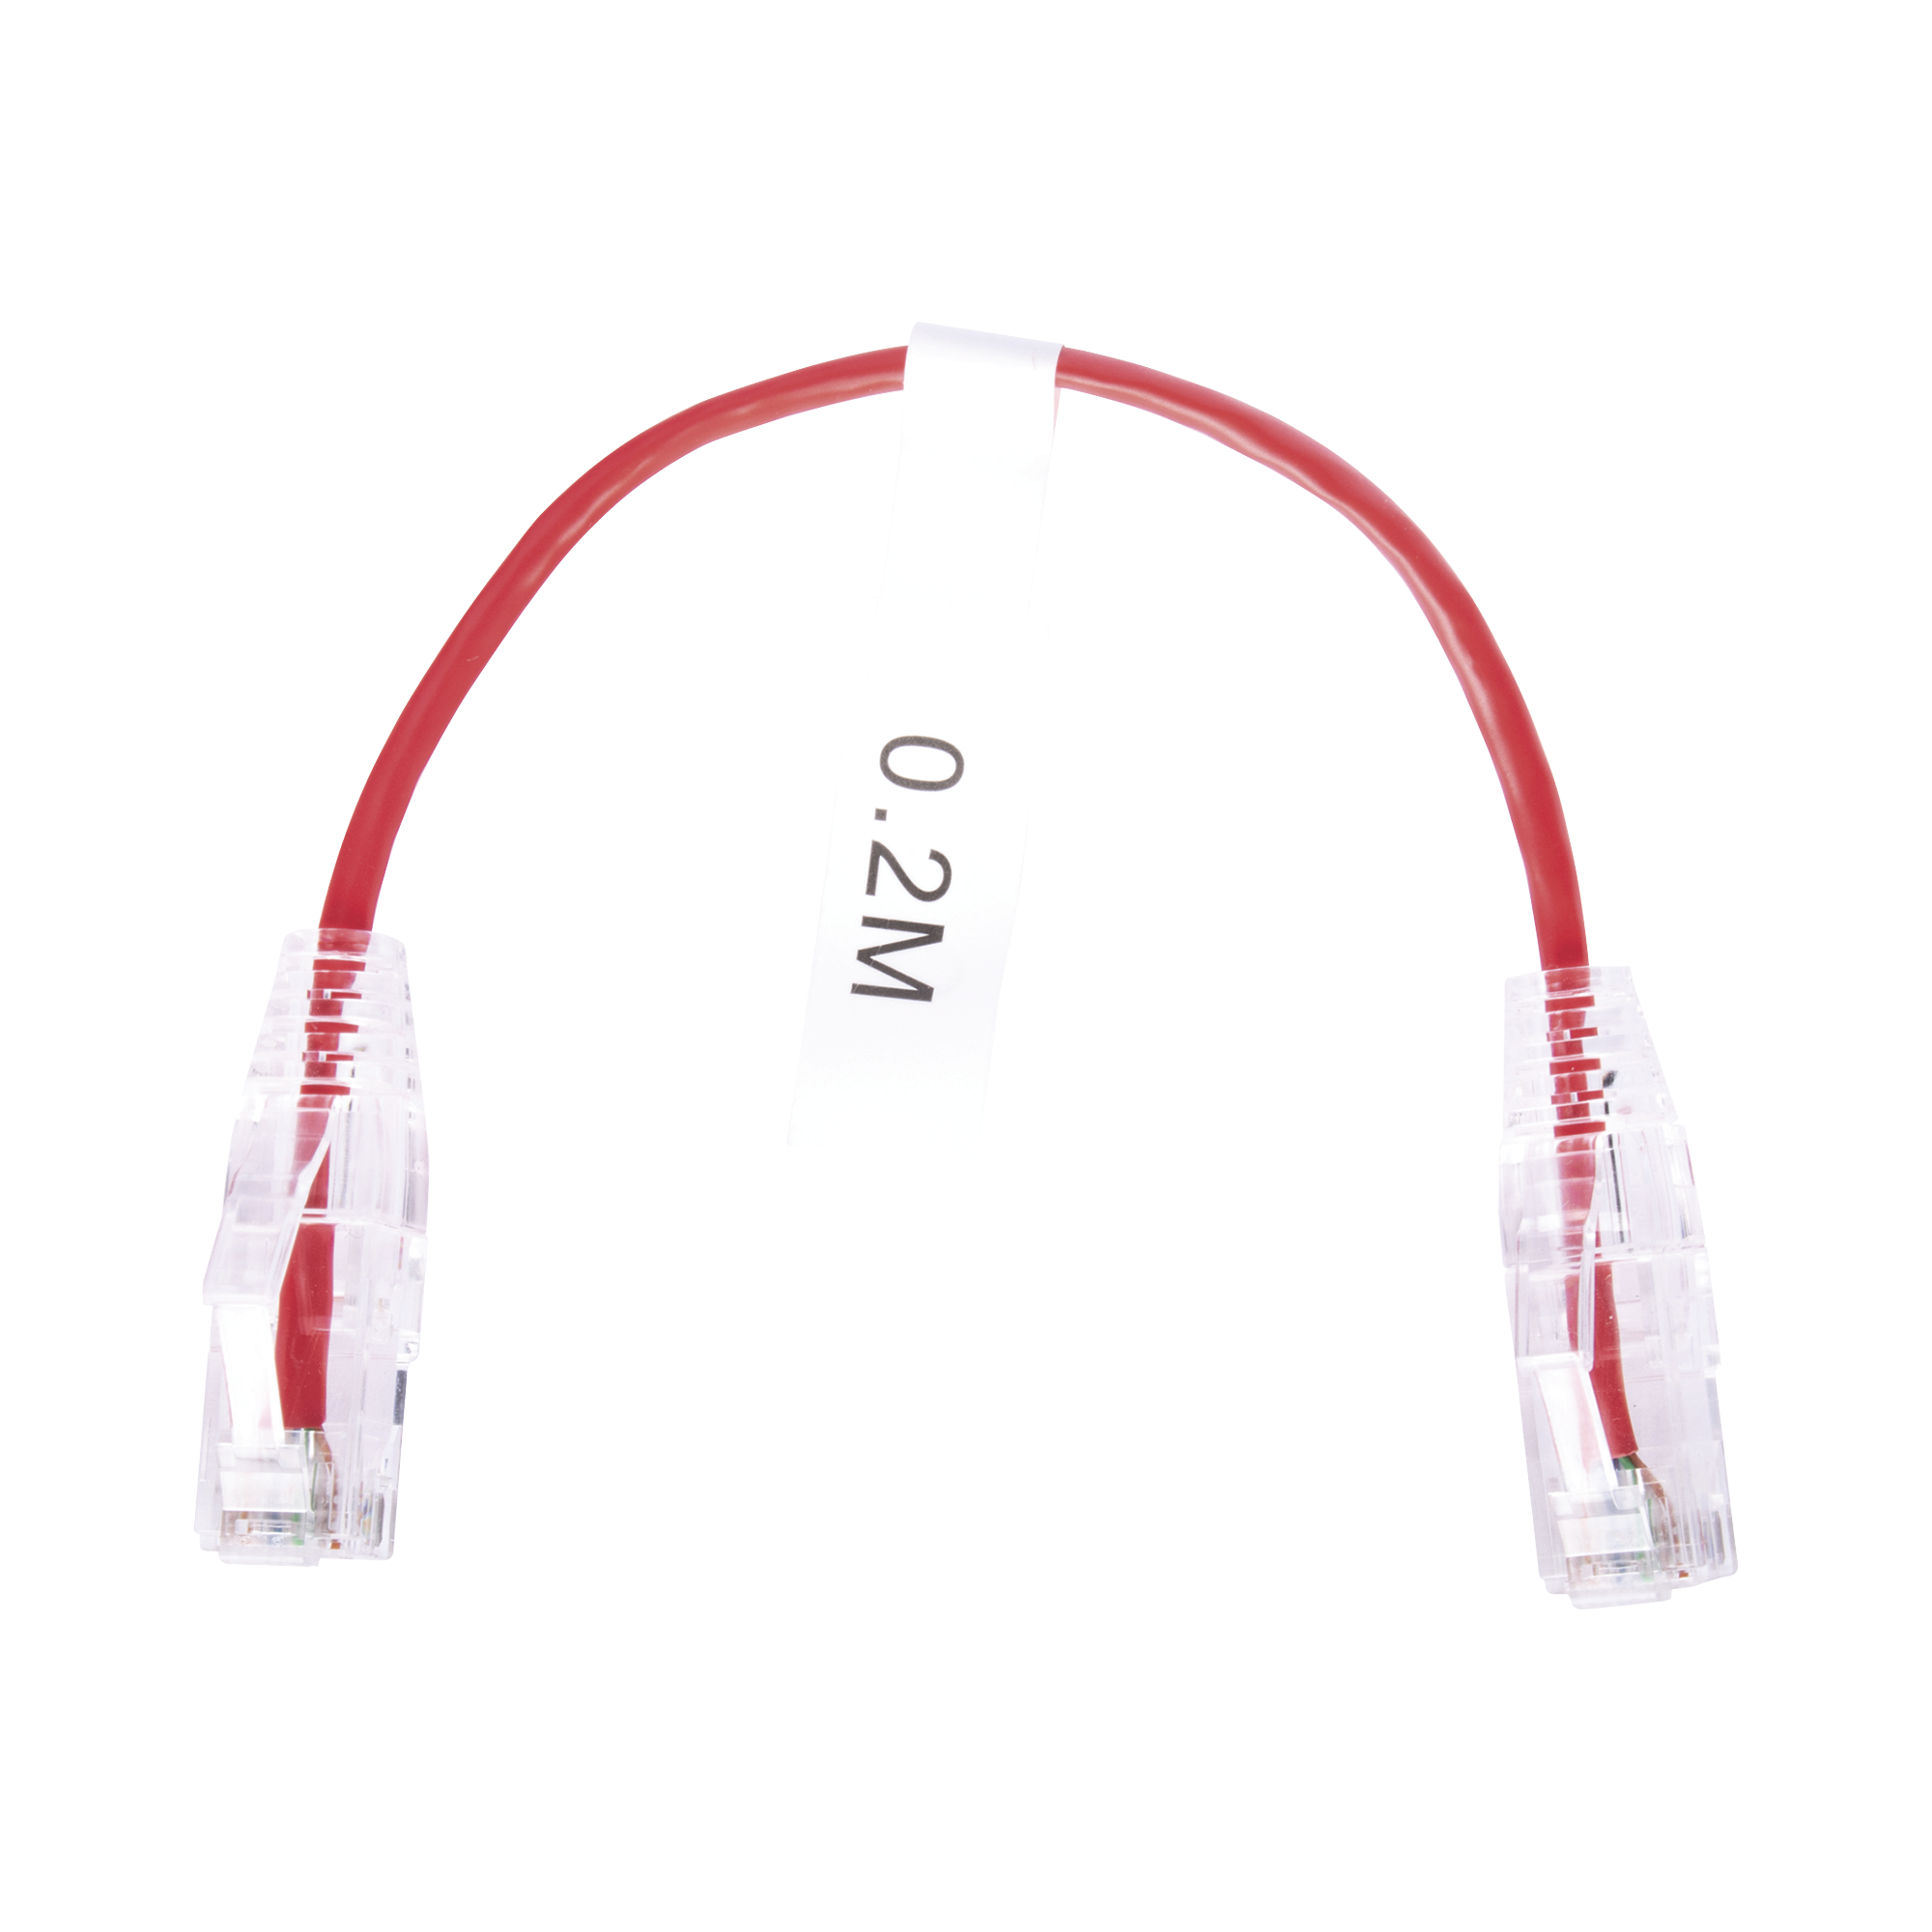 Cable de Parcheo Slim UTP Cat6 - 20 cm Rojo Diámetro Reducido (28 AWG)